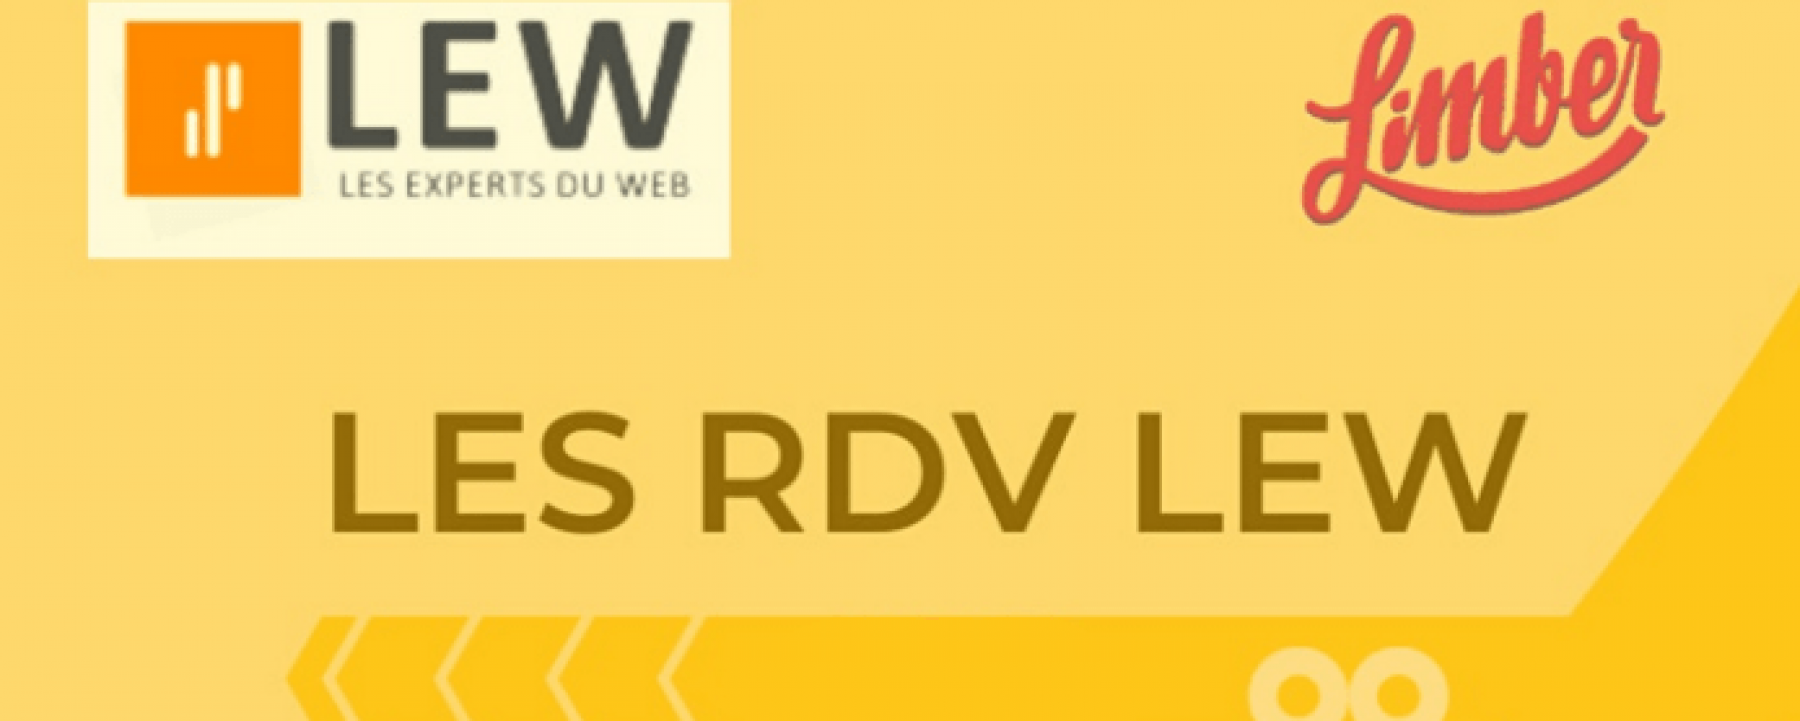 RDV Les Experts du Web #12, un webinar organisé par les Experts du Web le 3 février 